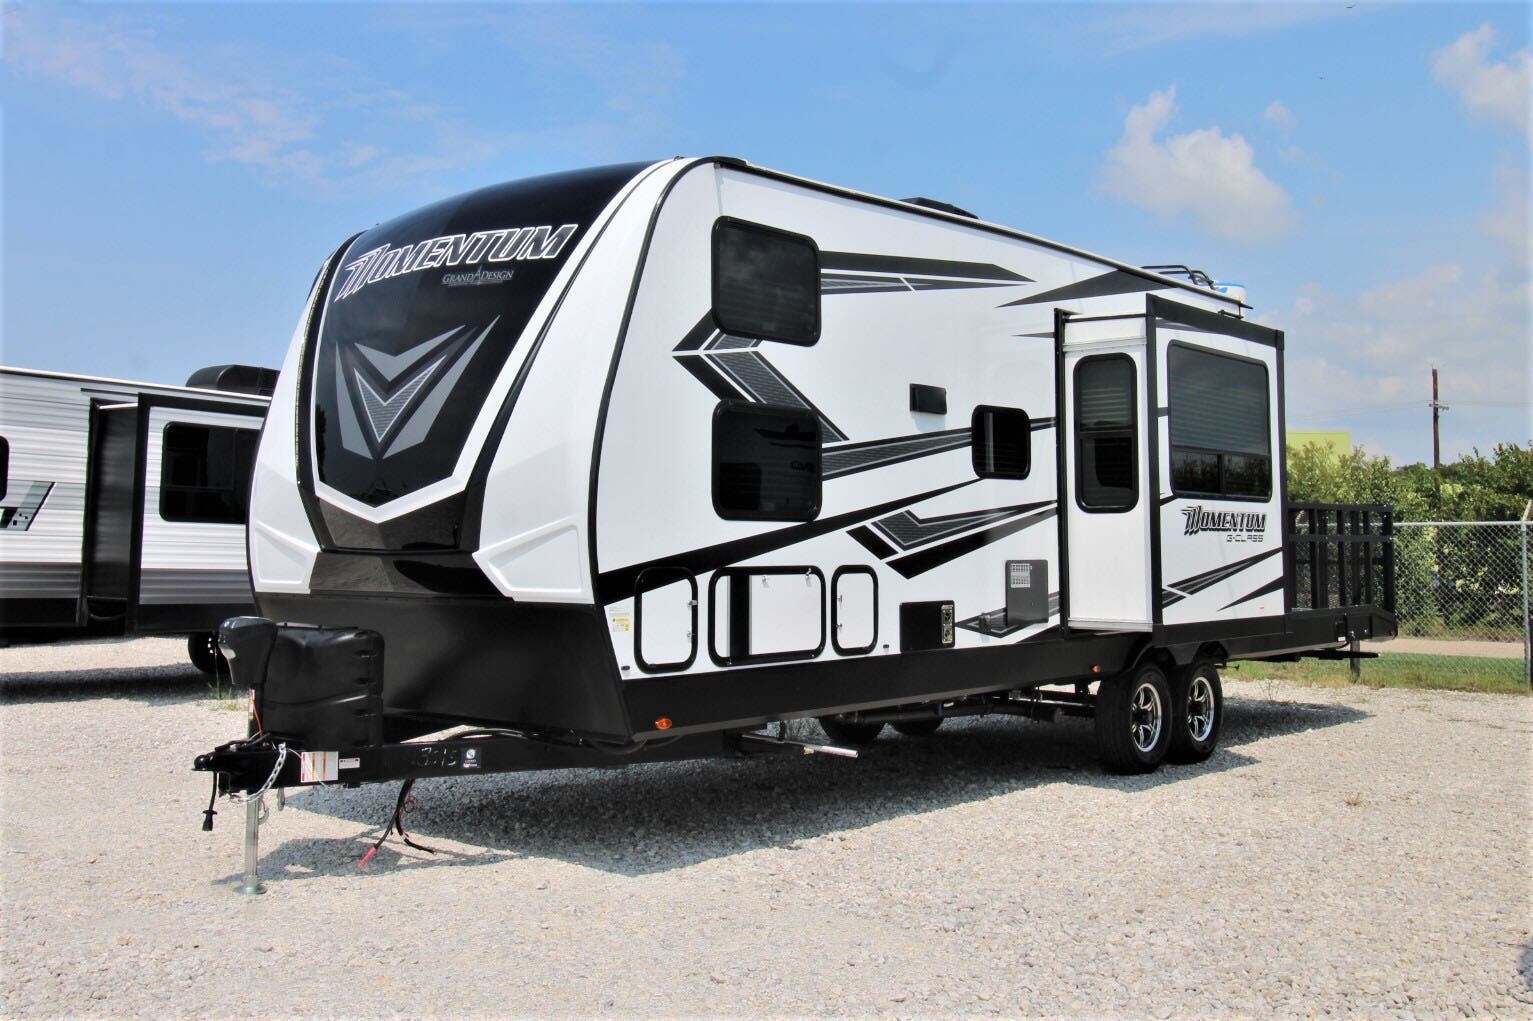 2021 Grand Design Momentum 29GO RV for Sale in Corinth, TX 76210 ...